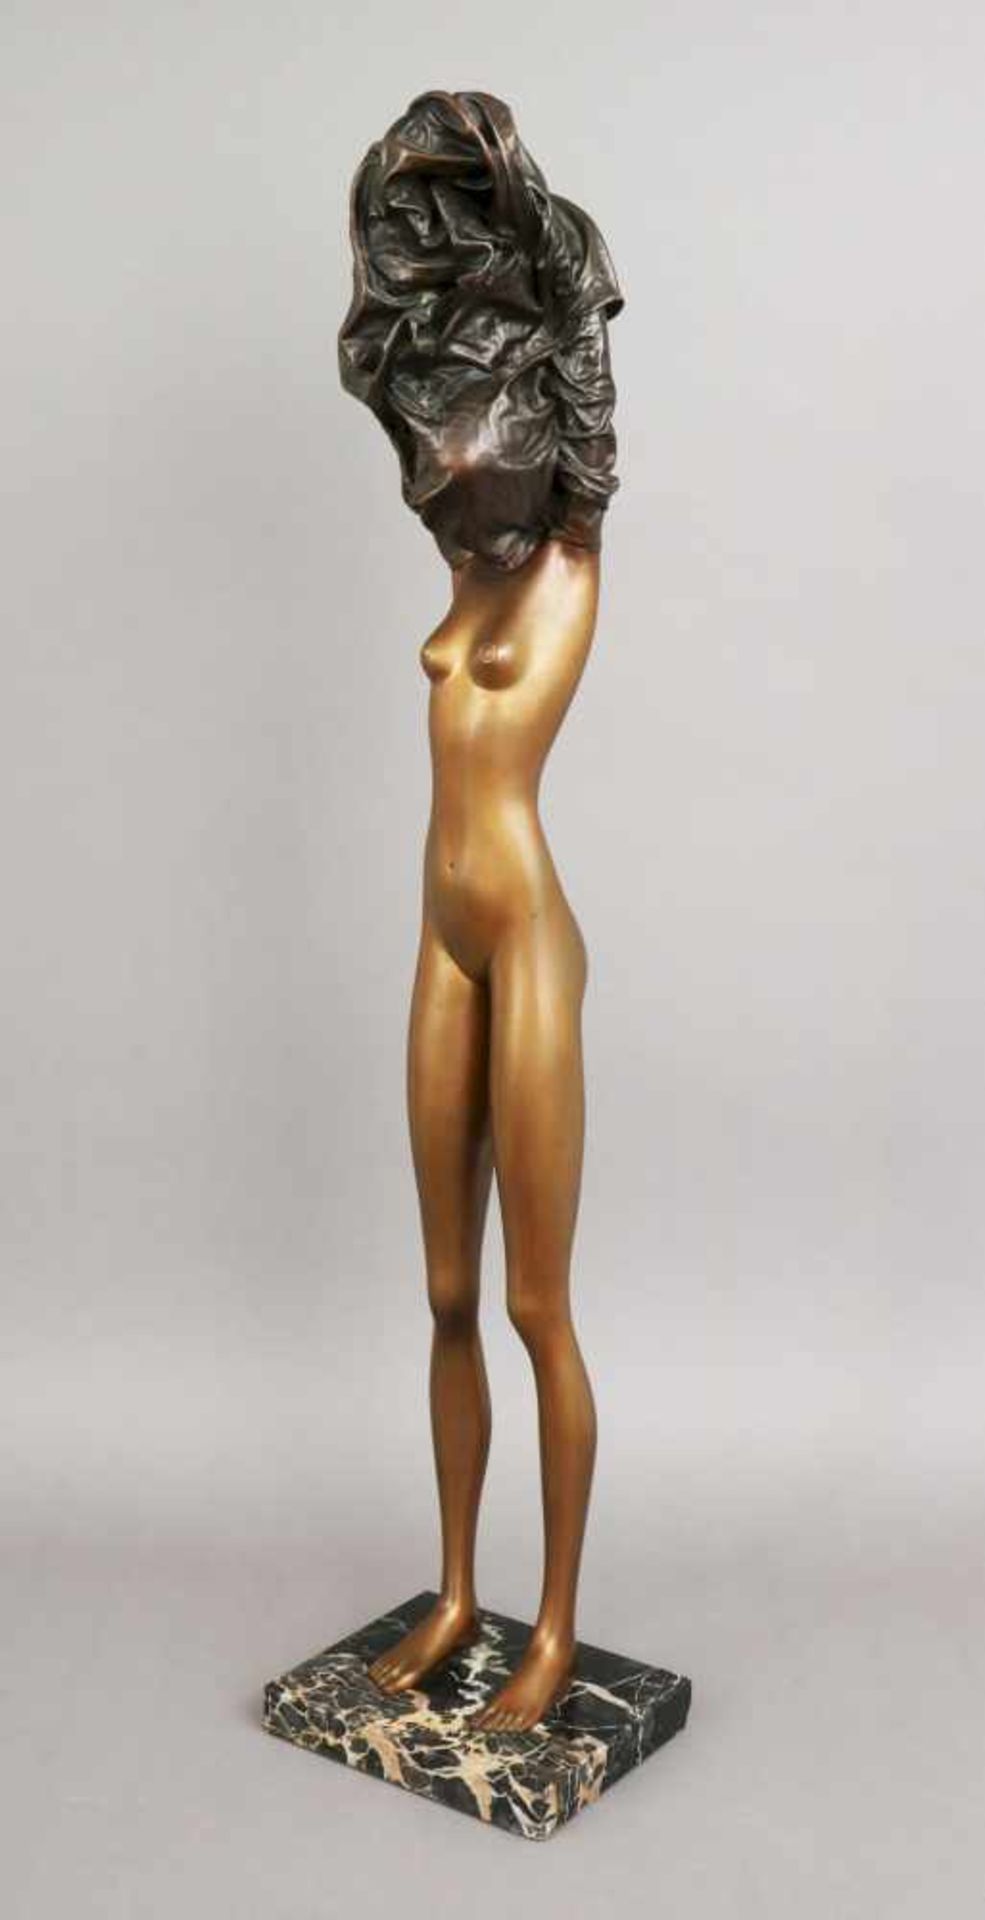 BRUNO BRUNI (1935) Bronzefigur ¨La Divina¨partiell vergoldet und dunkel patiniert, am rechten Fuß